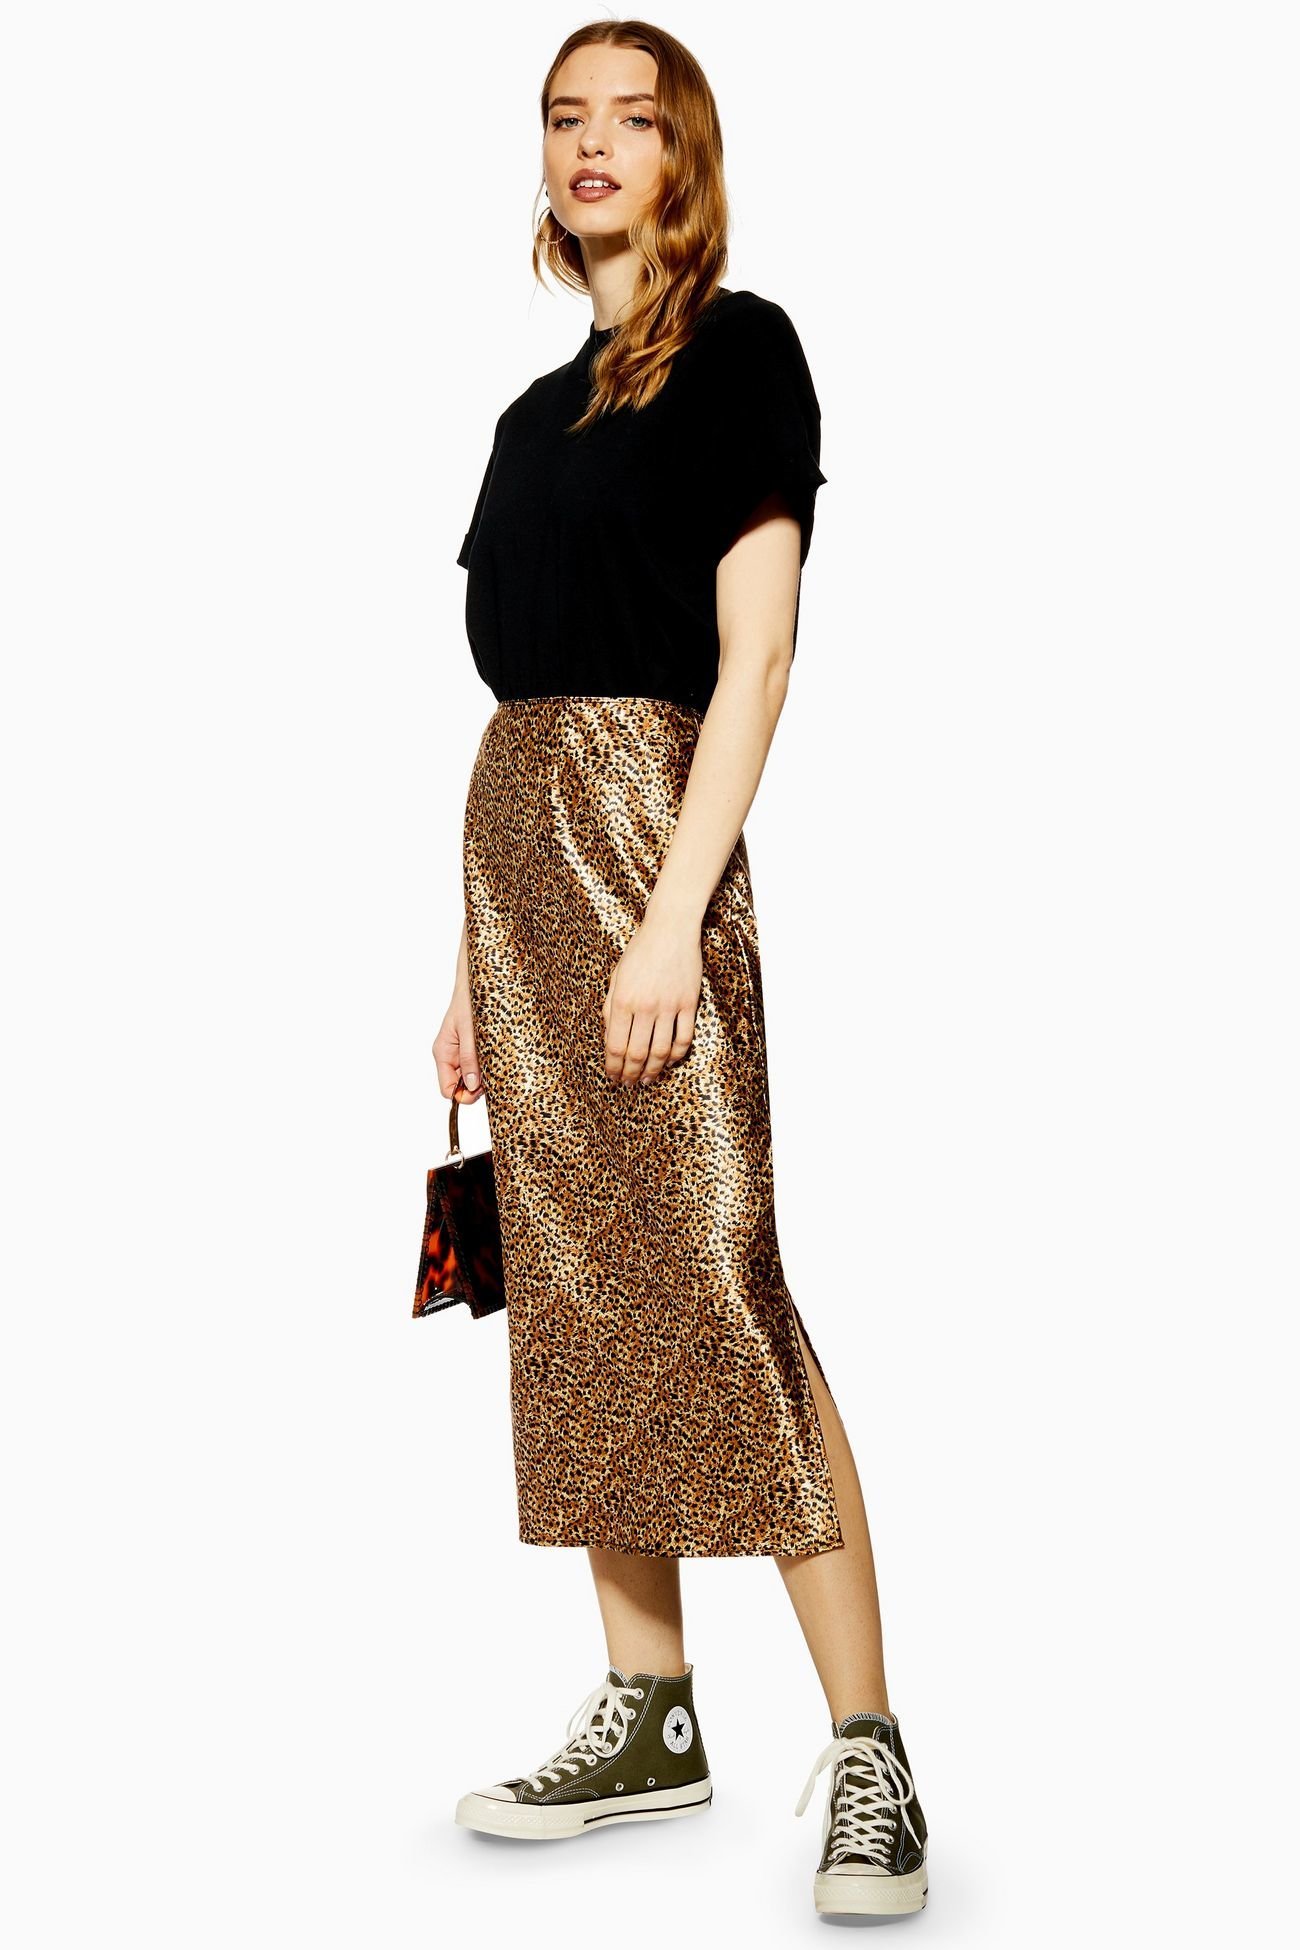 Topshop leopard print midi skirt | Leopard skirt outfit, Leopard print  outfits, Leopard dress outfit